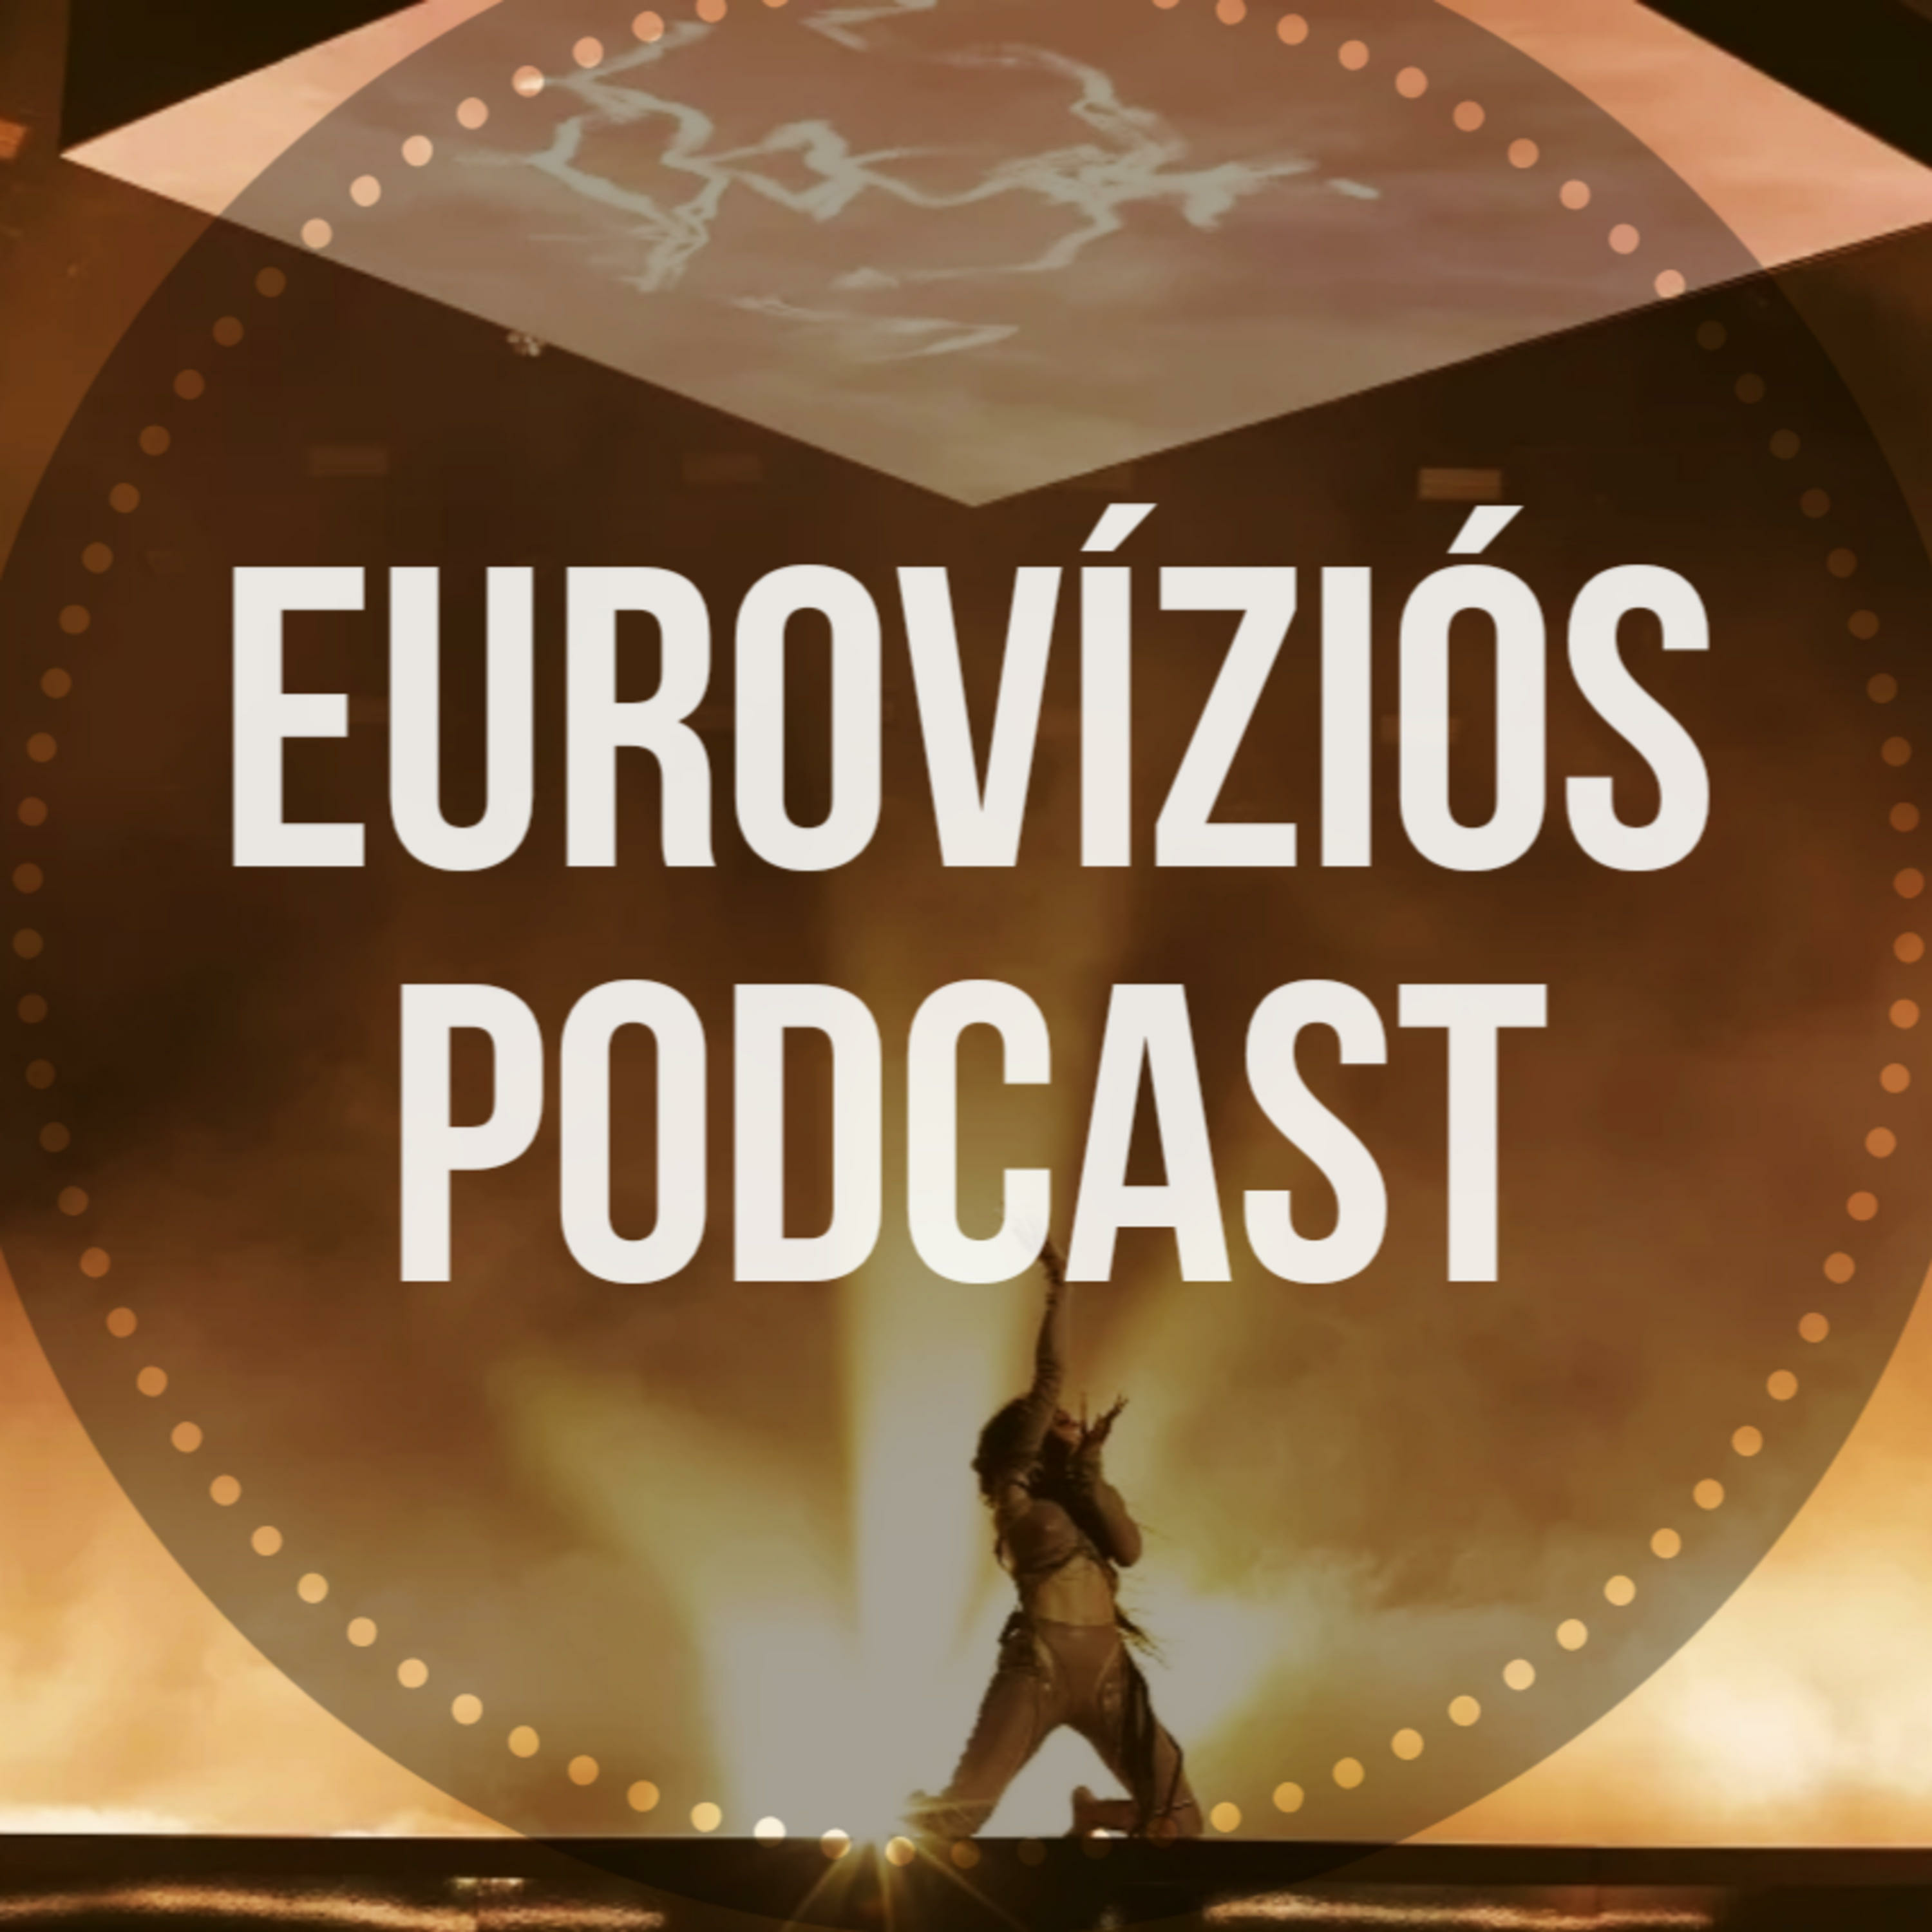 Eurovíziós Podcast